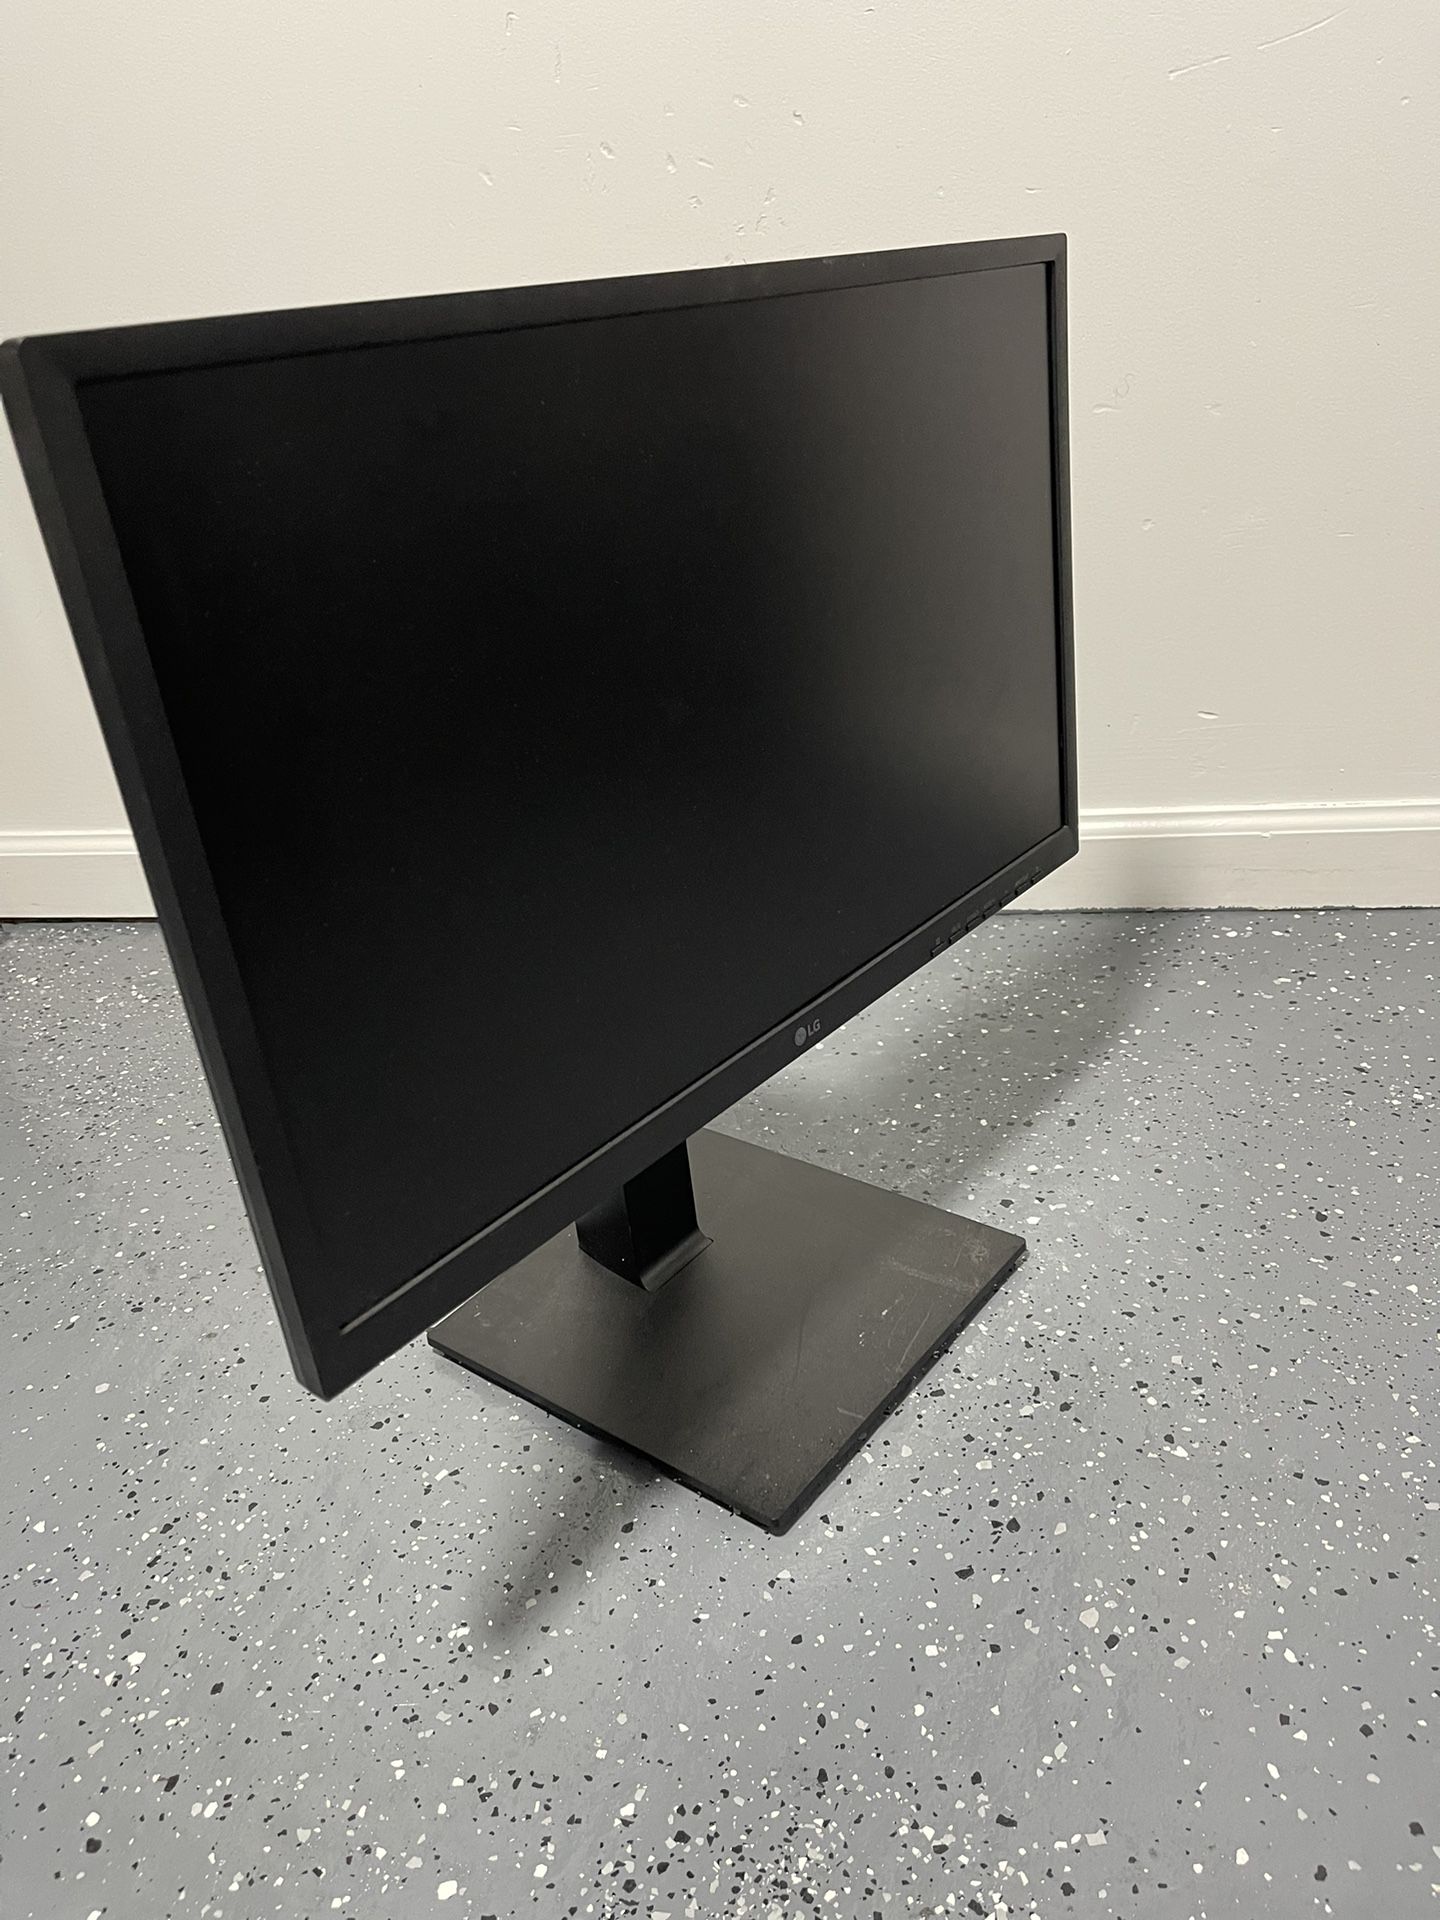 LG Monitor Computer 